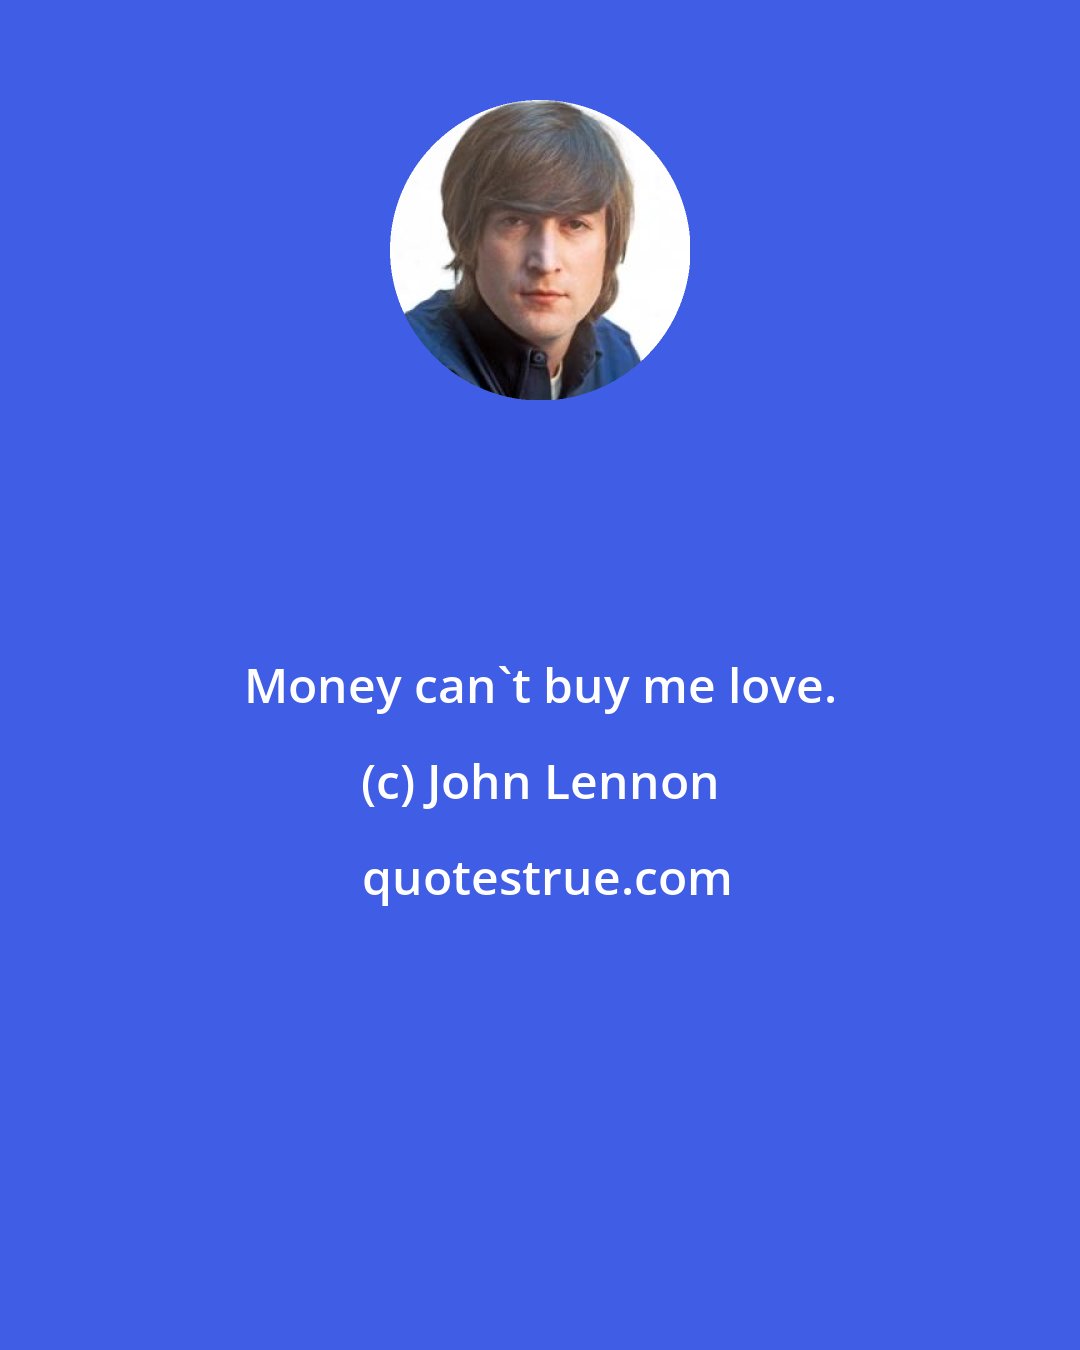 John Lennon: Money can't buy me love.